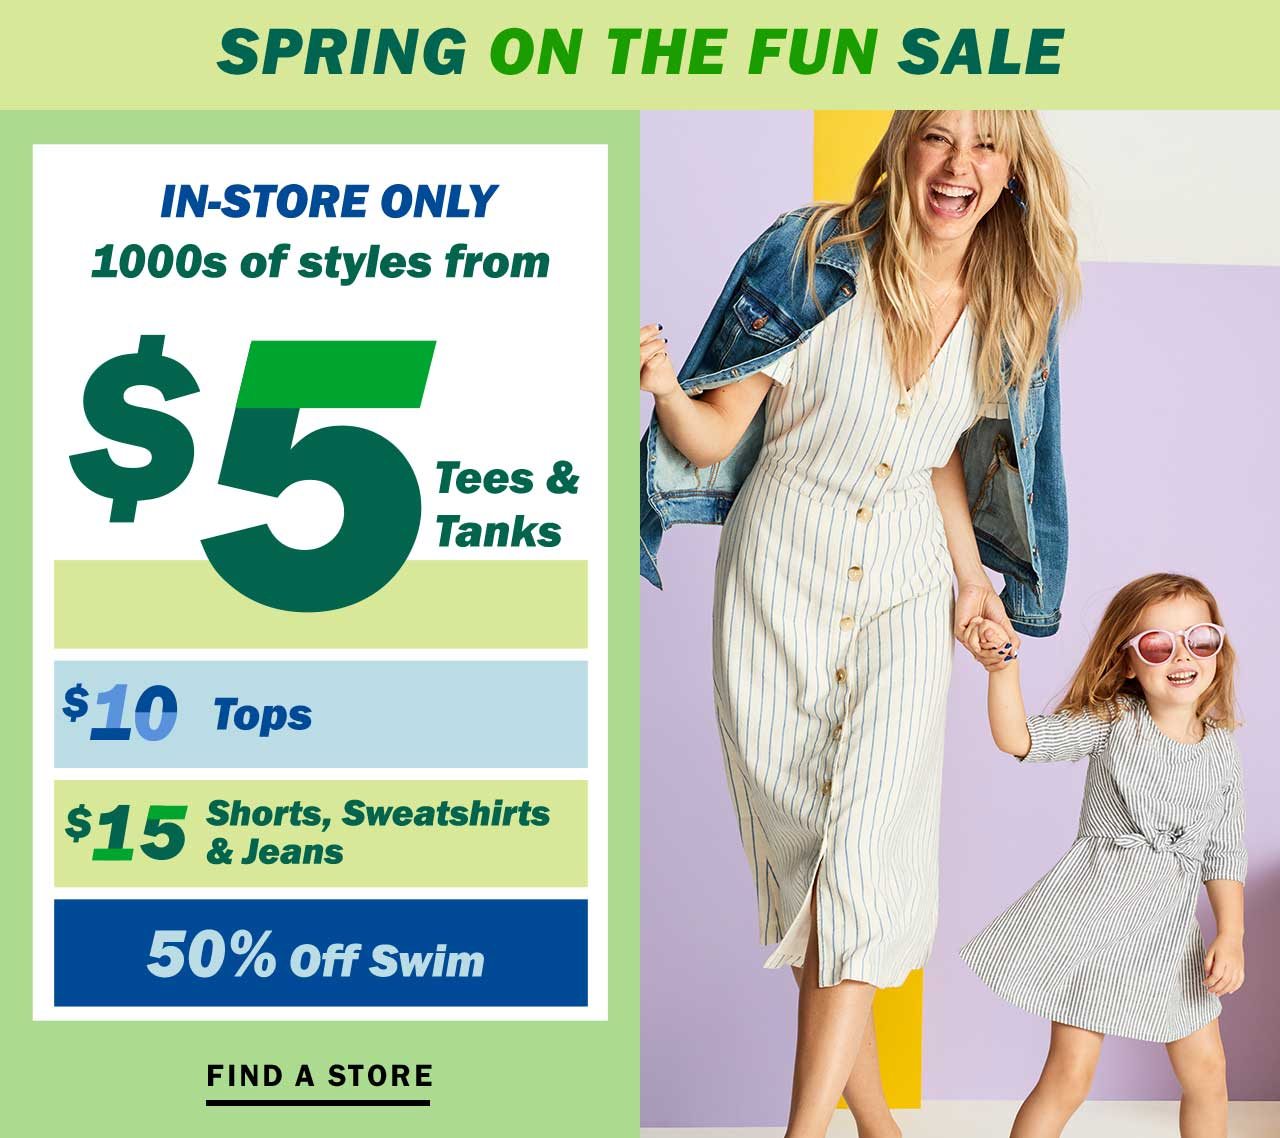 Spring on the fun sale